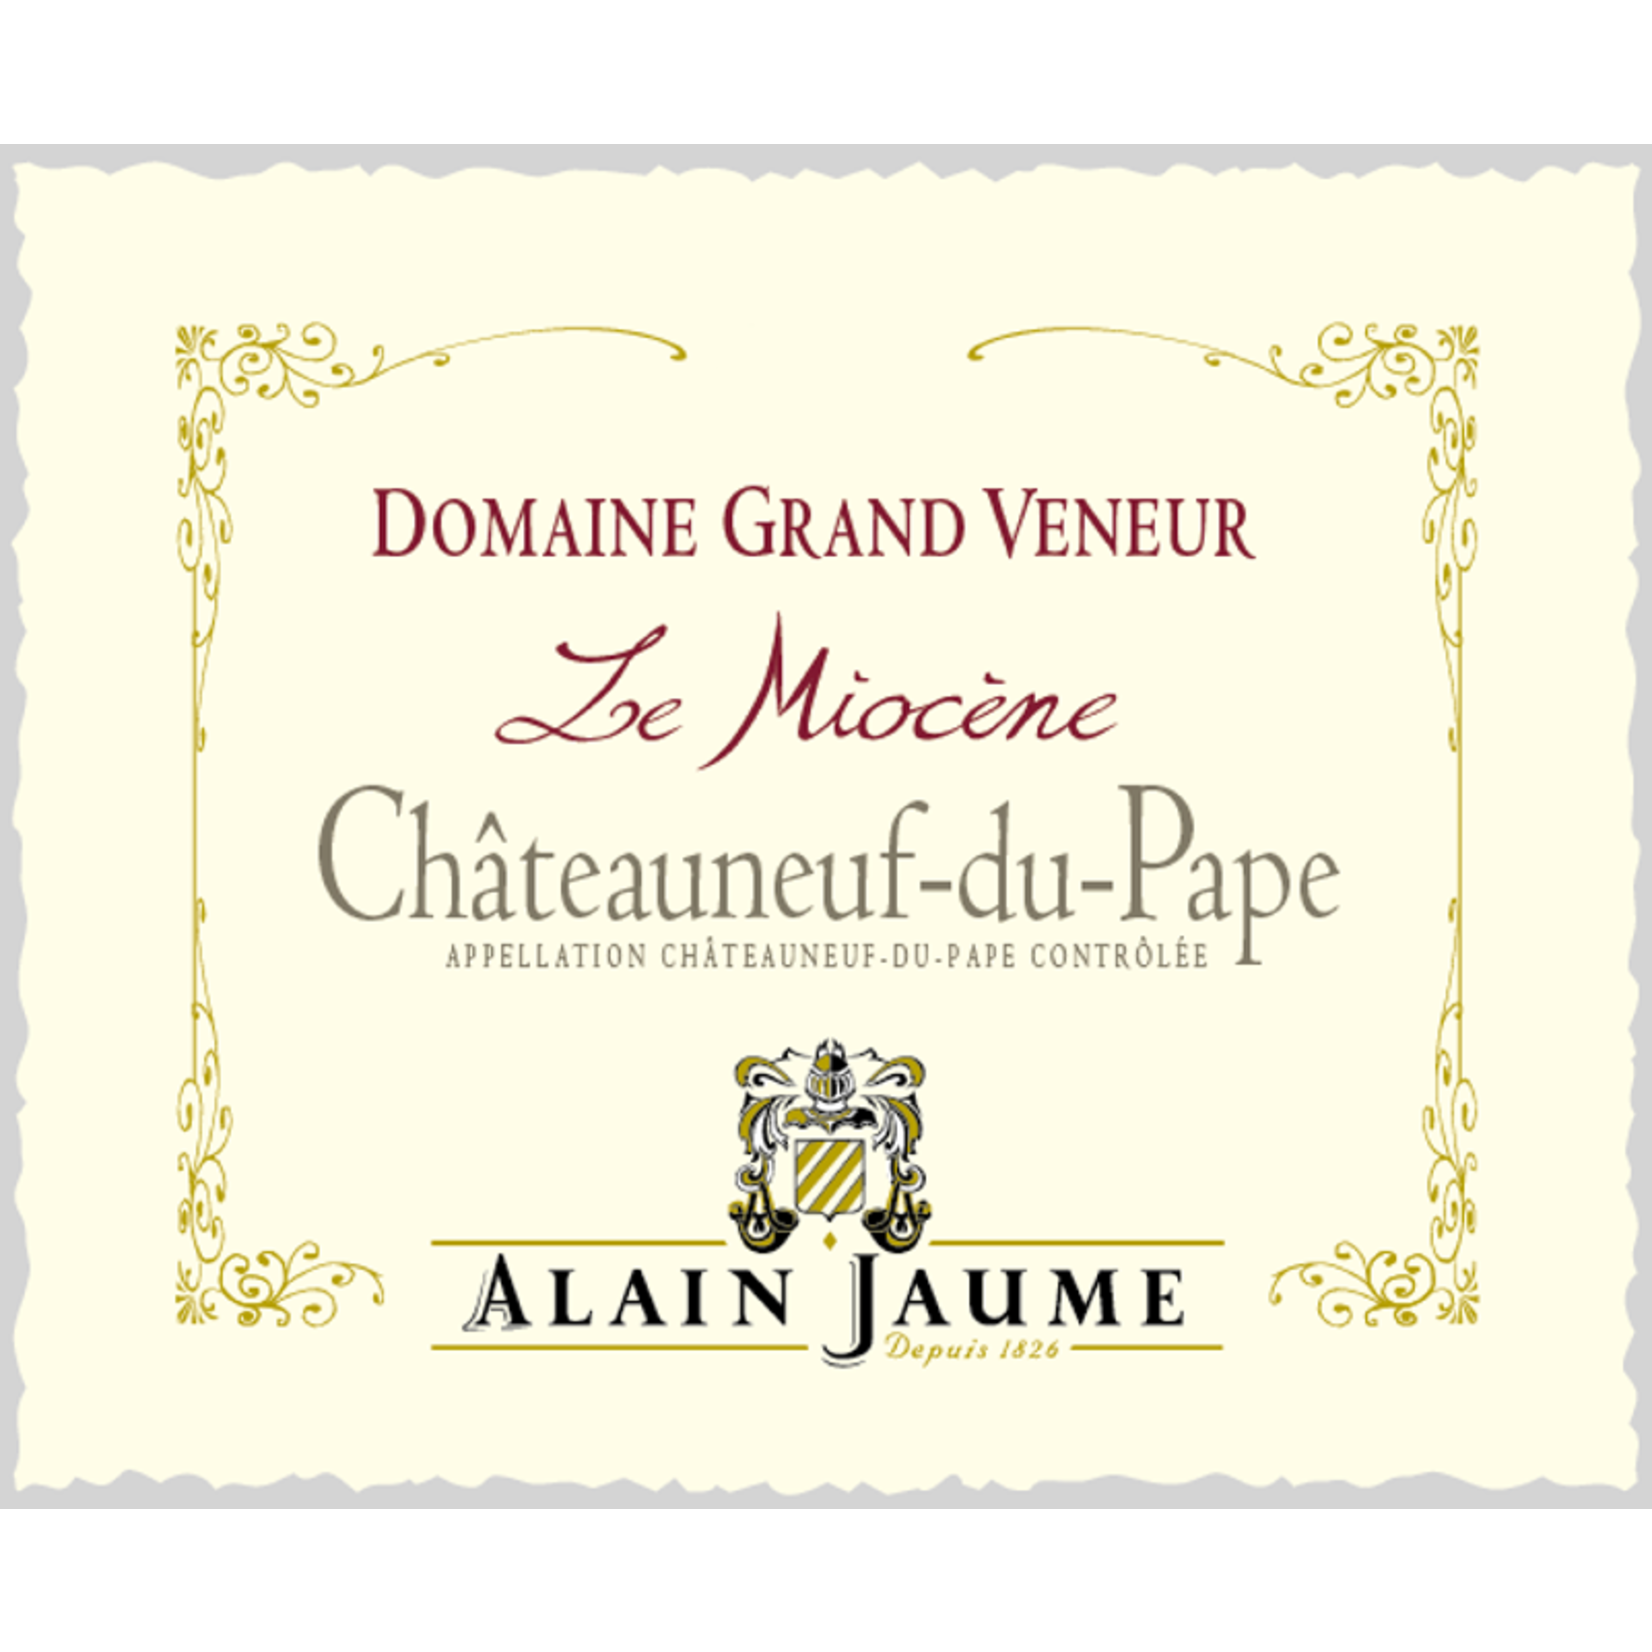 Domaine Grand Veveur Alain Jaume Domaine Grand Veneur Châteauneuf-du-Pape Rouge Le Miocène 2021  France 94 Pts WS